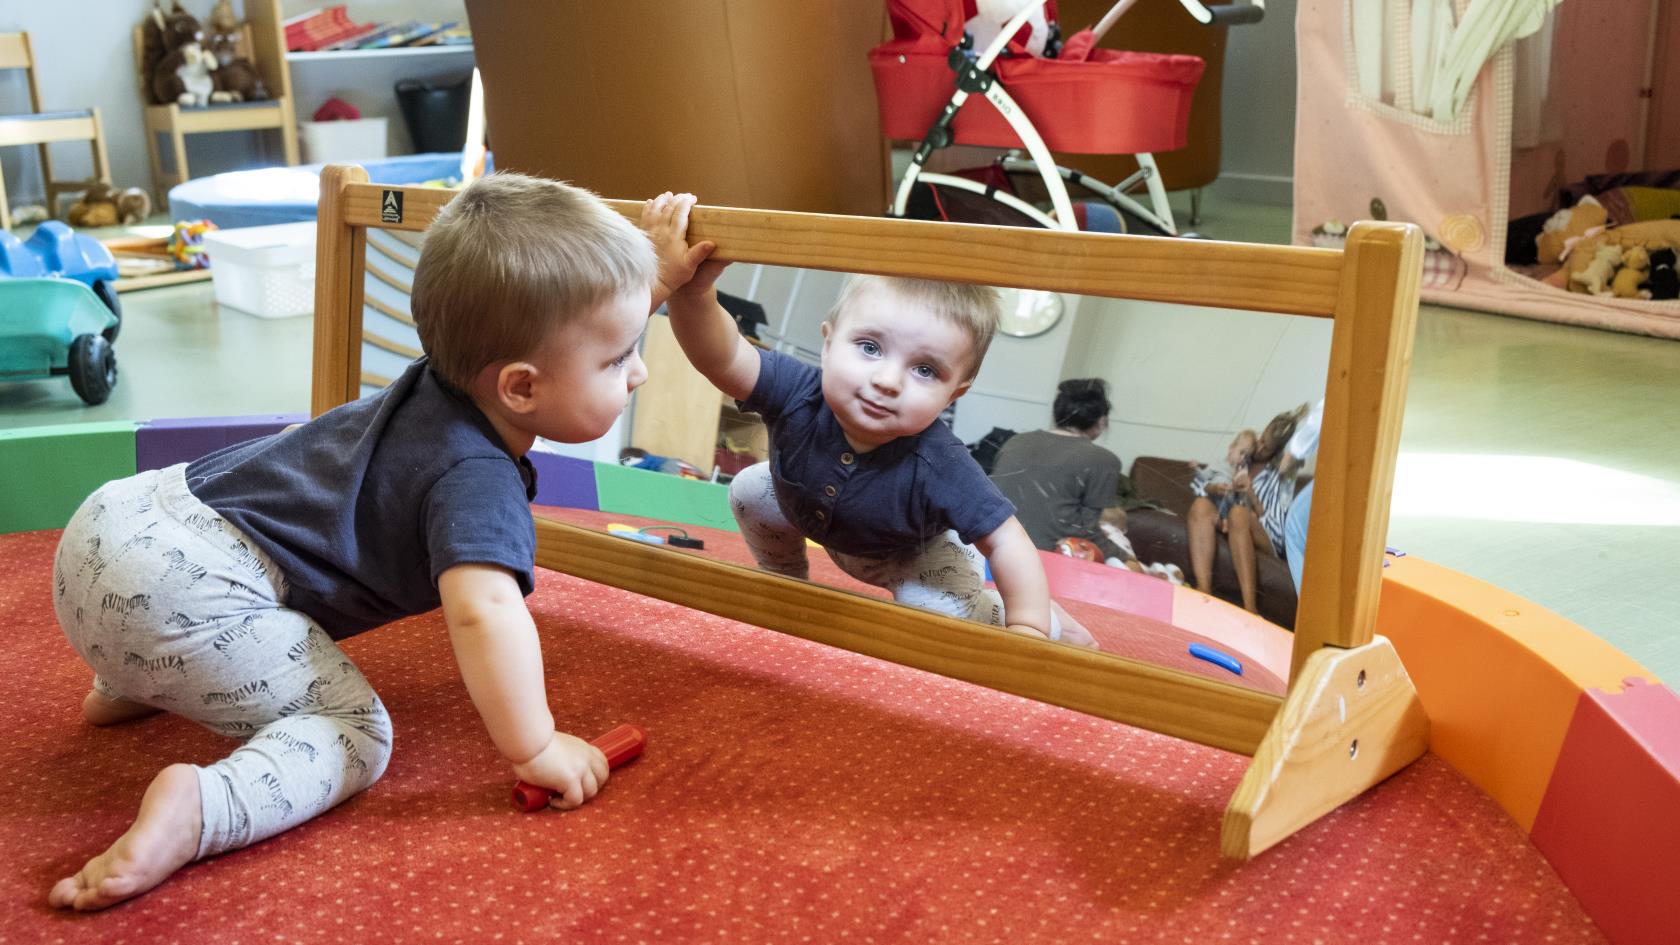 En liten pojke kryper mot en spegel på golvet.